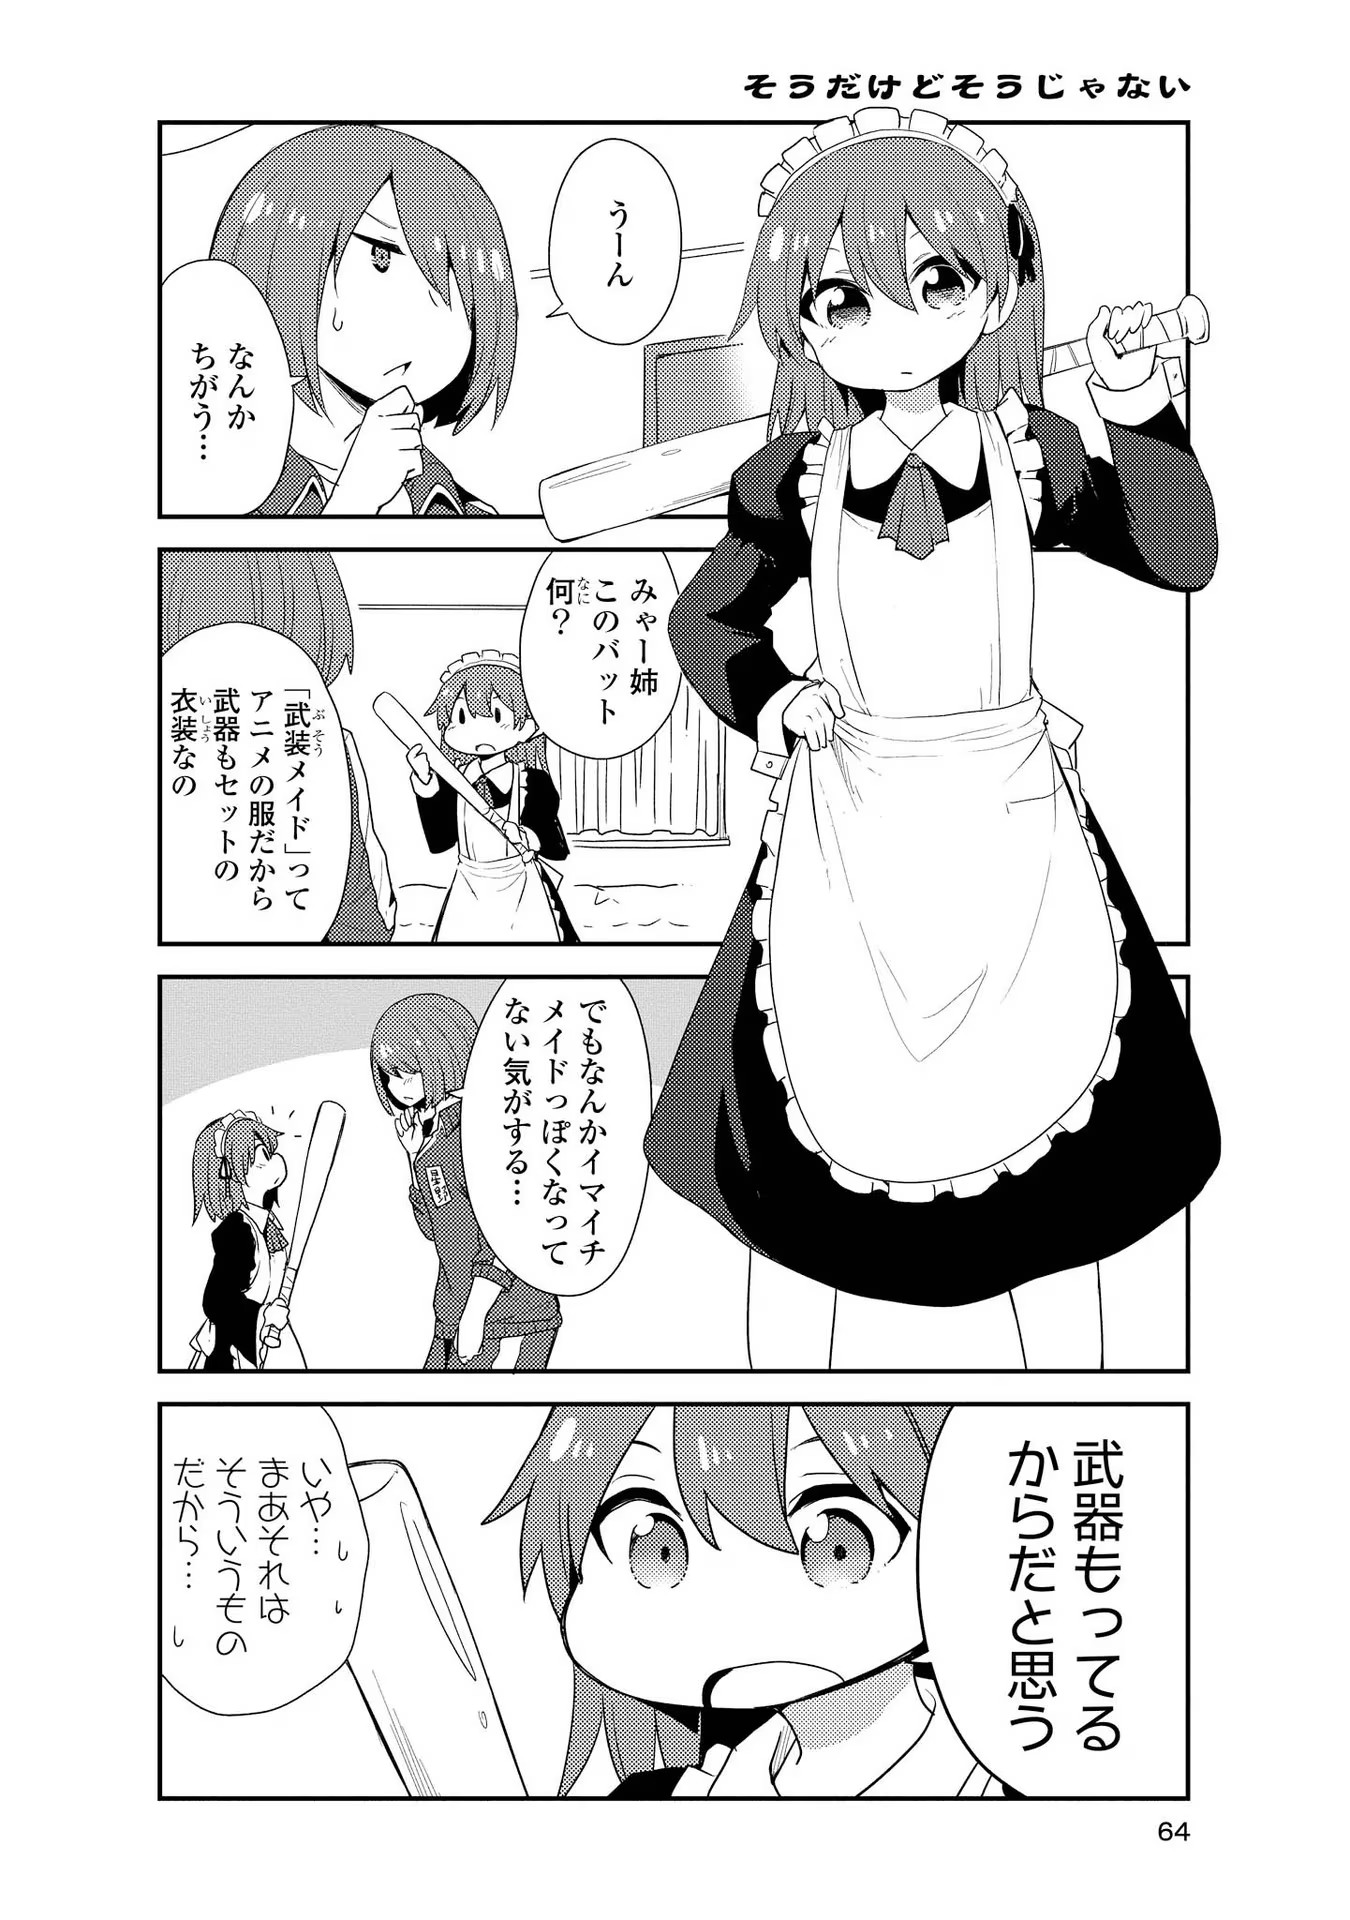 Watashi ni Tenshi ga Maiorita! - Chapter 151 - Page 2